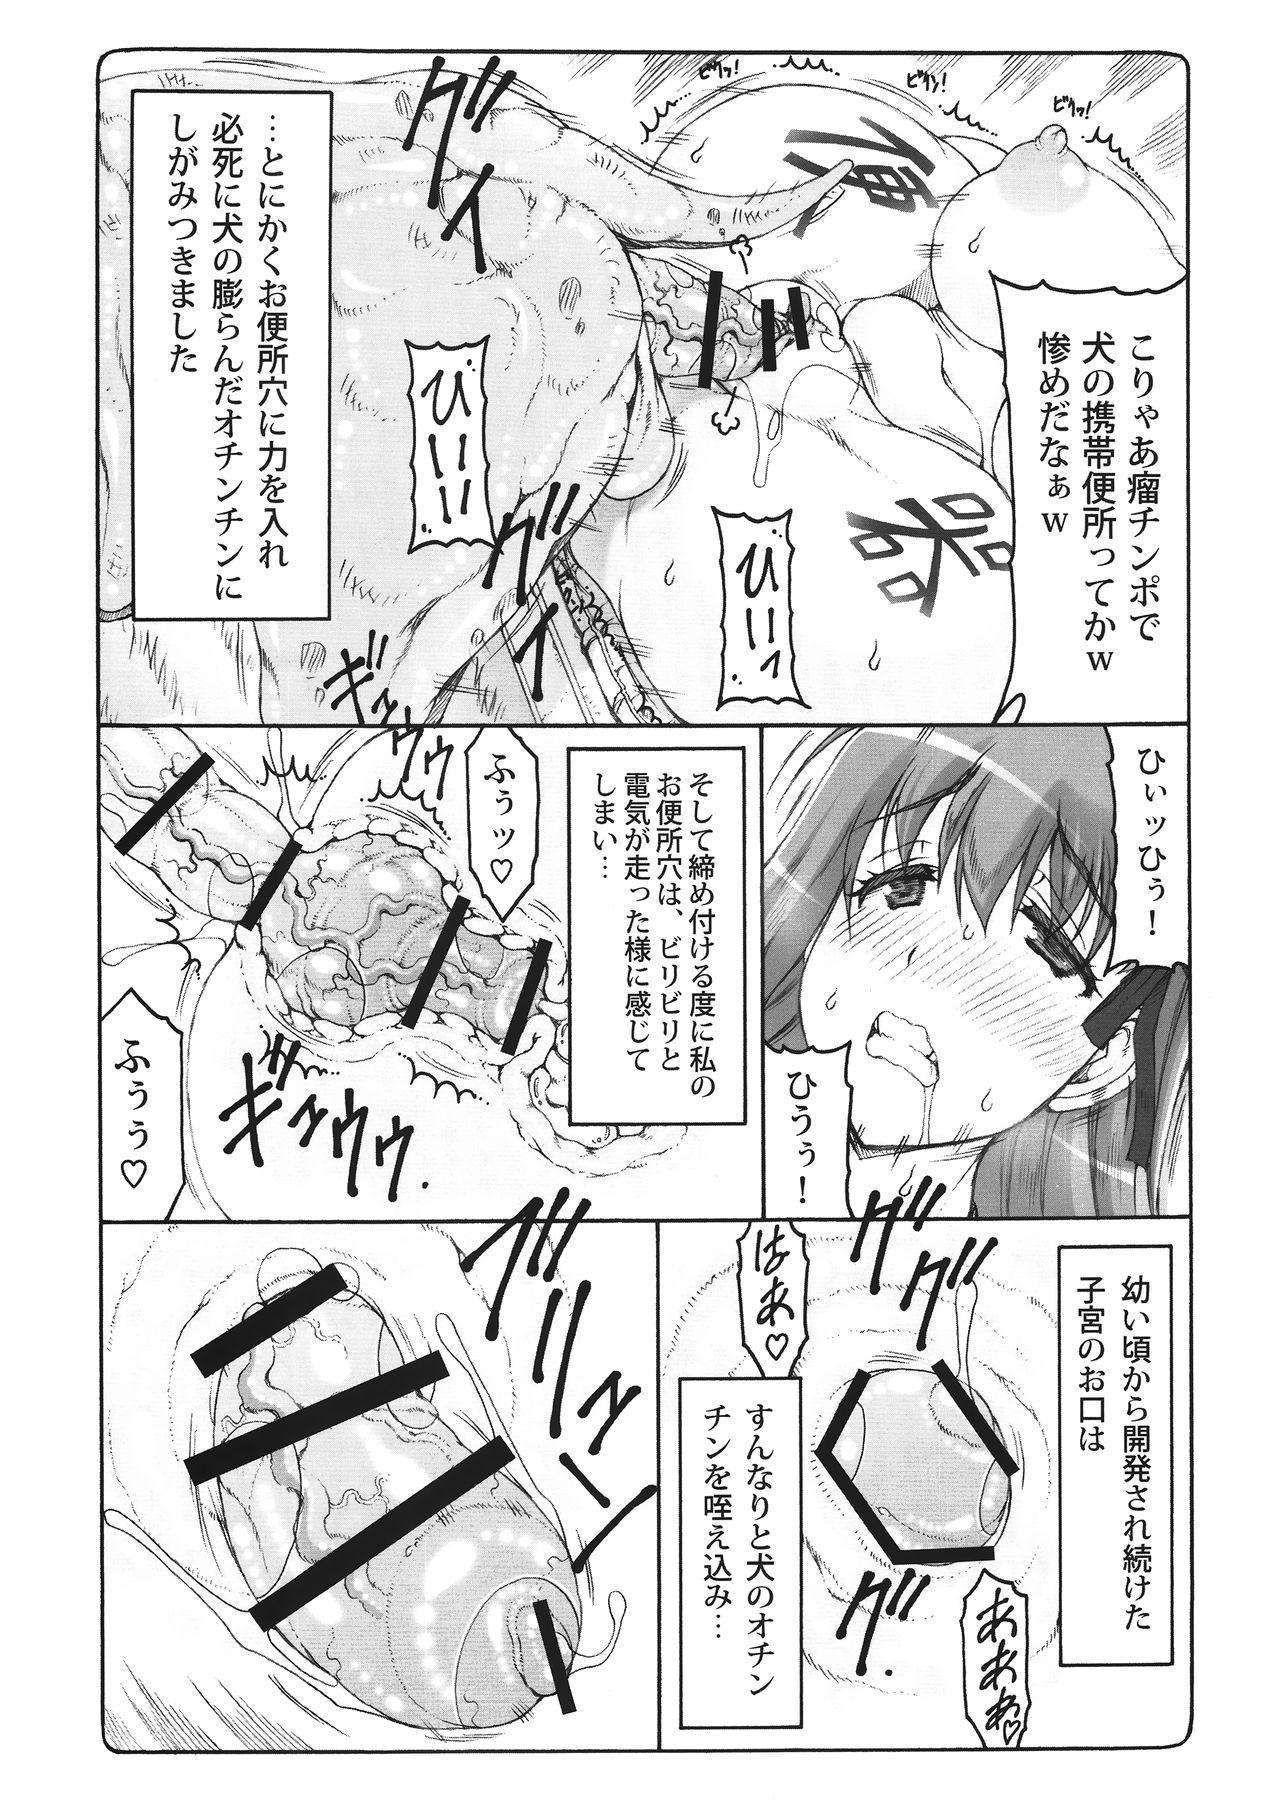 Ninfeta Kotori 14 - Fate stay night Amazing - Page 8